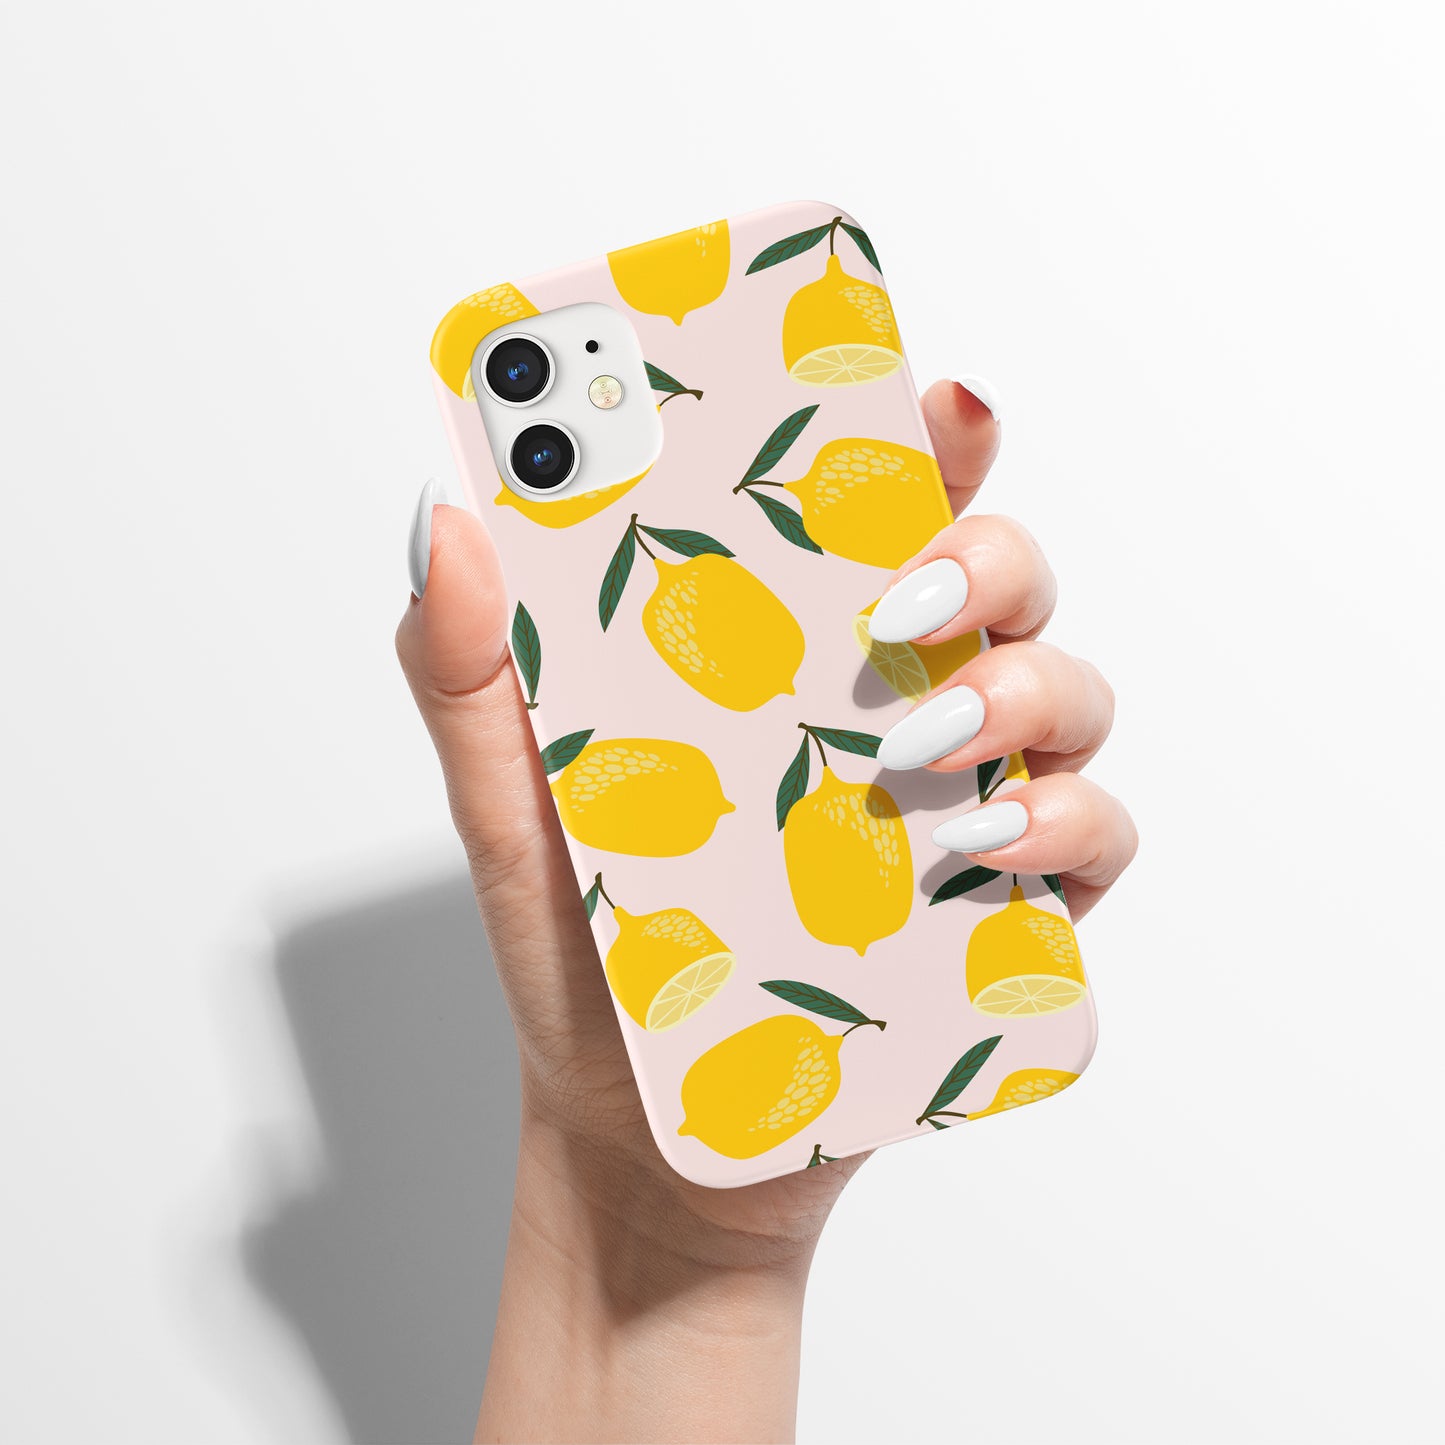 Lemon Fruit Vegetarian Pattern iPhone Case